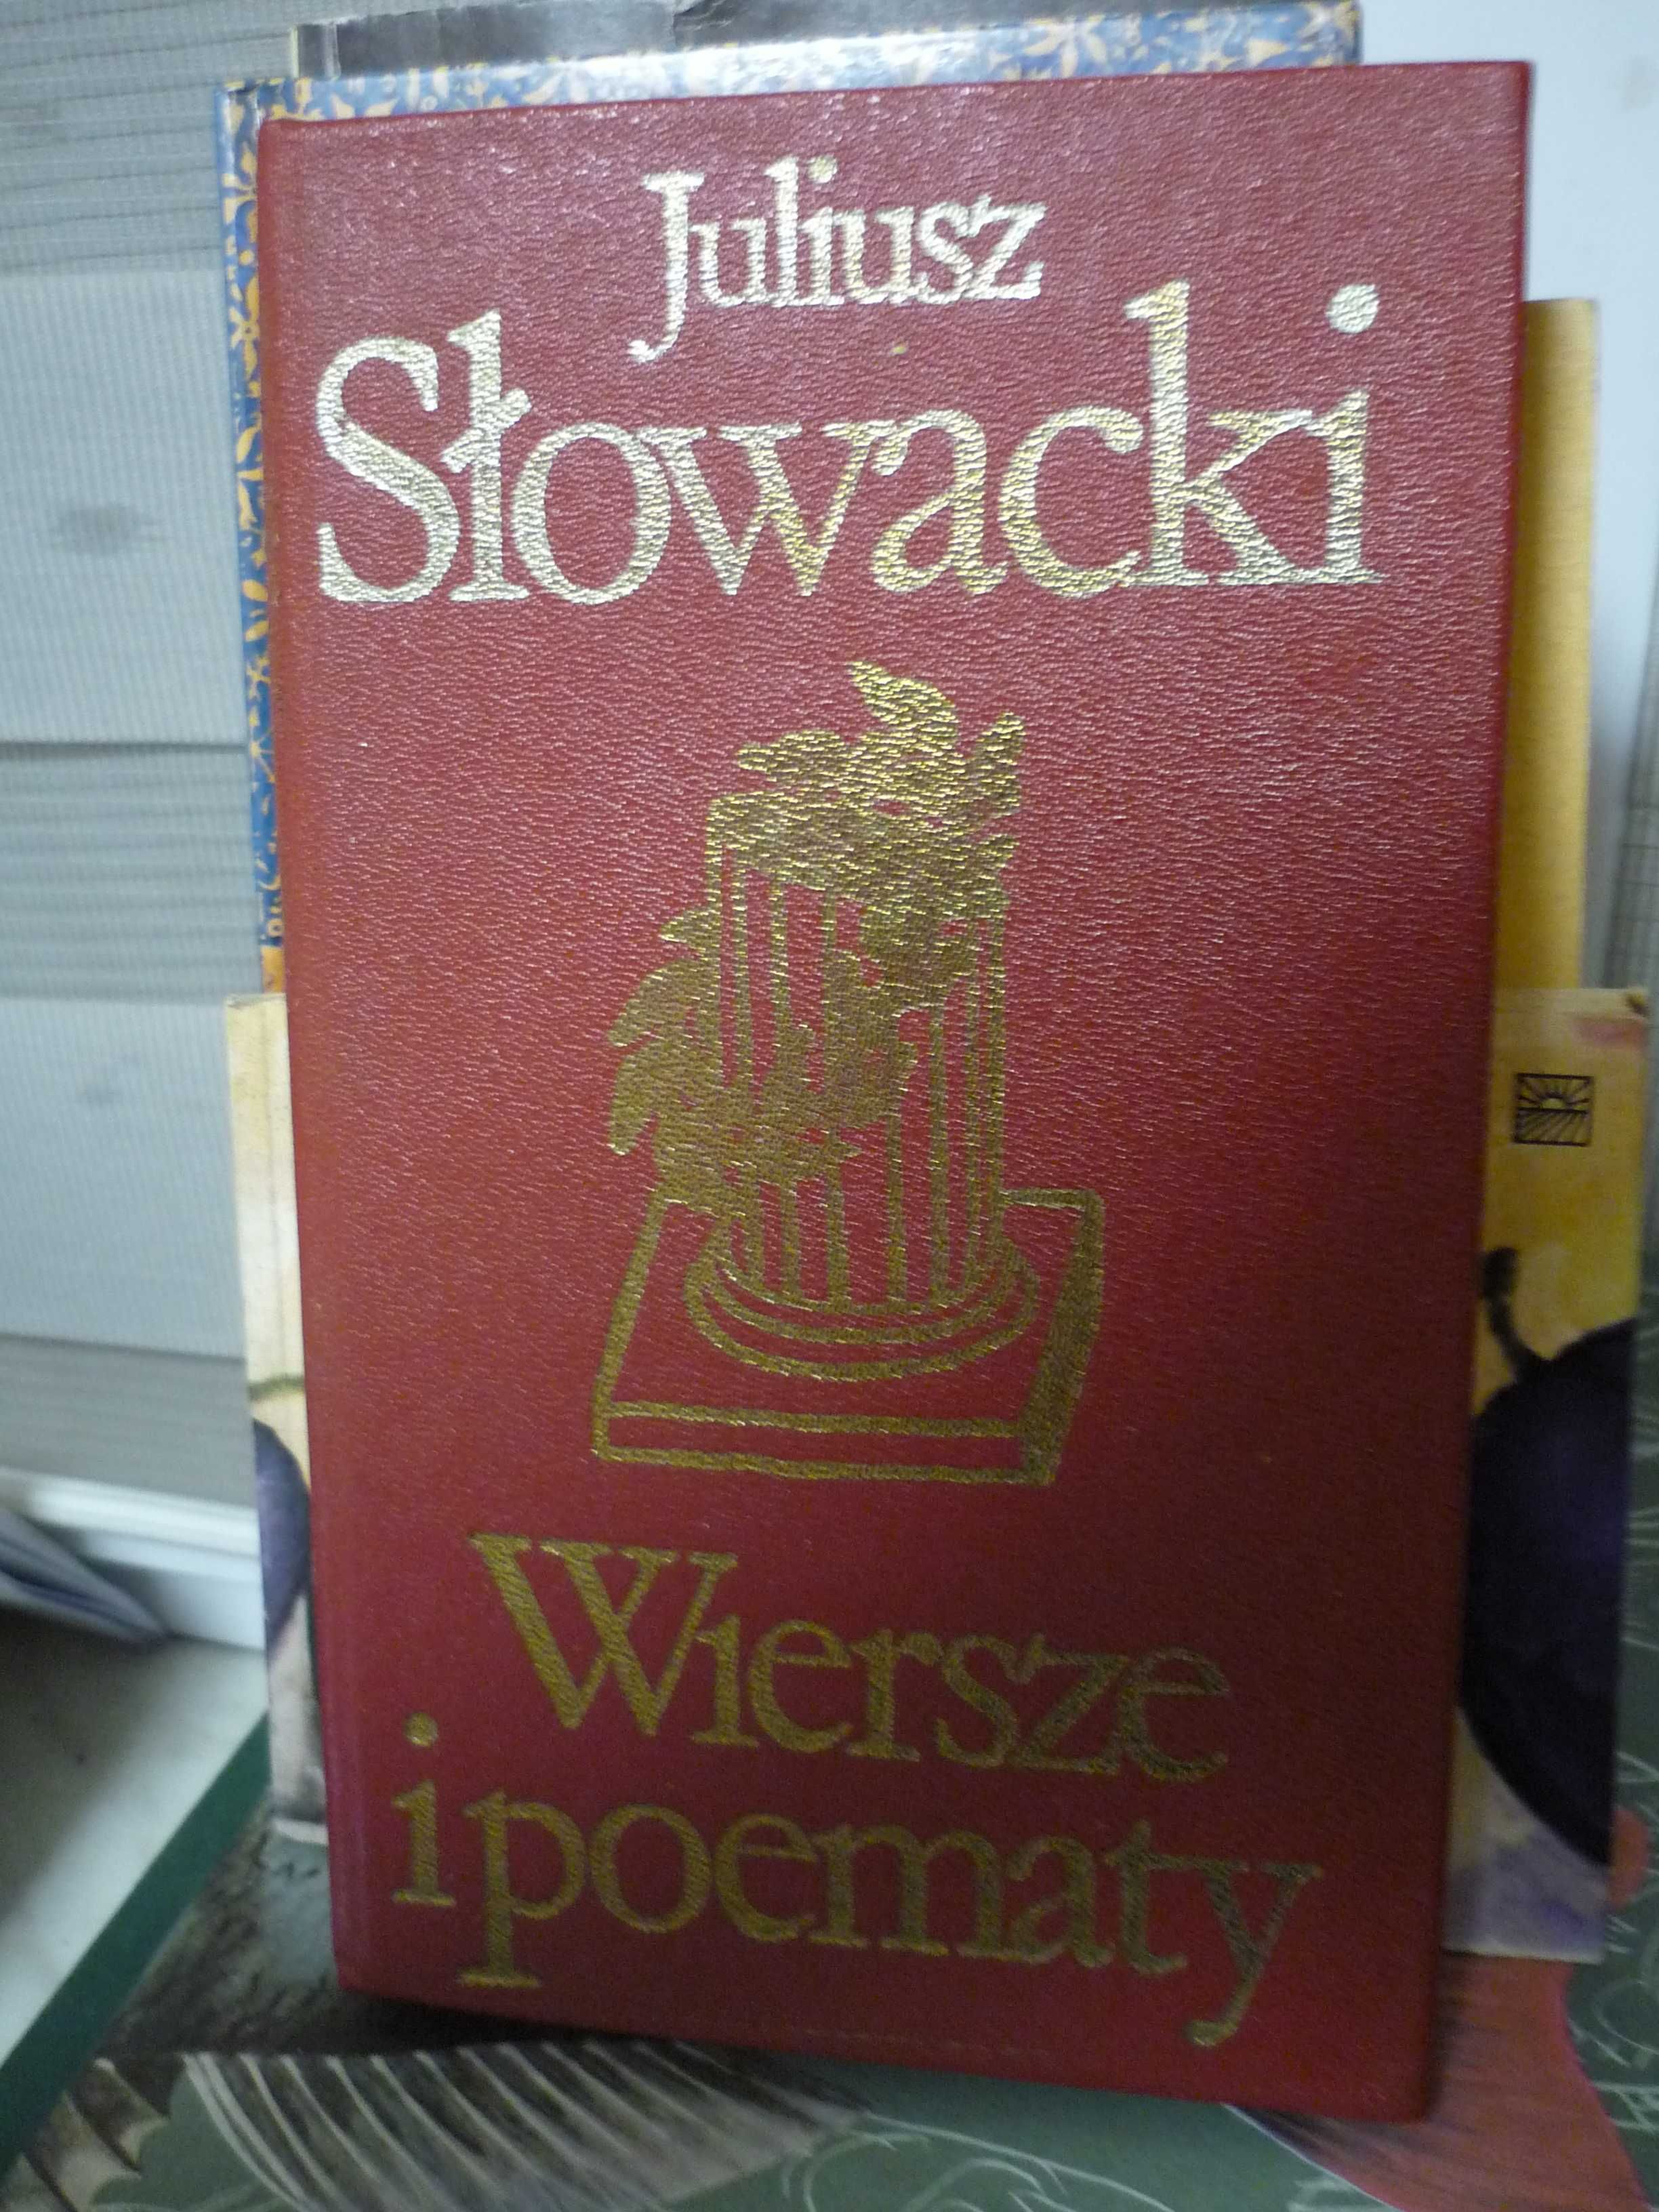 Wiersze i poematy , Juliusz Słowacki.